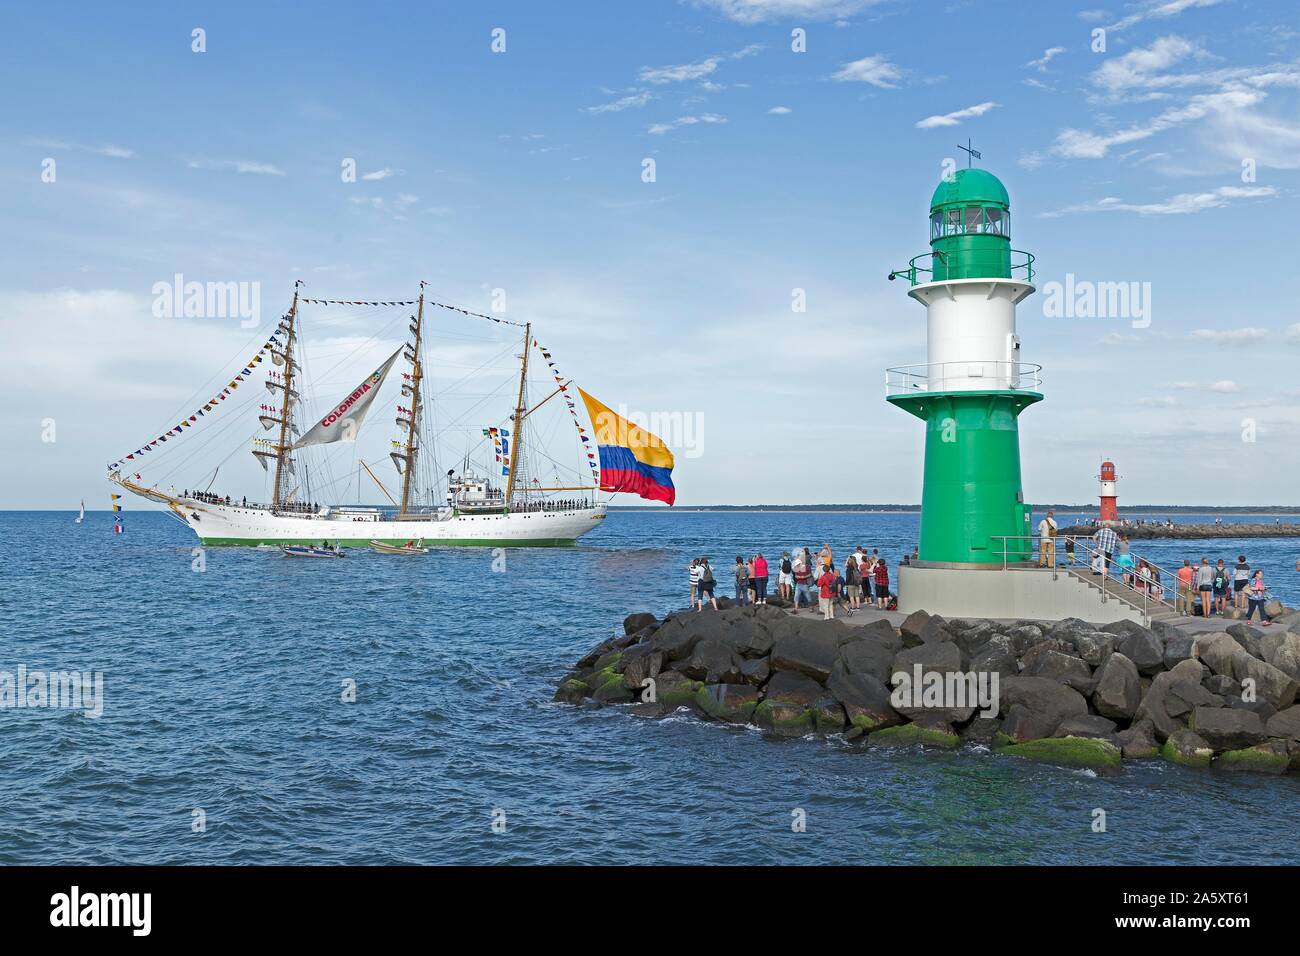 Corteccia colombiano Gloria lascia la Hanse Sail con marinai nei montanti, Warnemunde, Rostock, Meclemburgo-Pomerania Occidentale, Germania Foto Stock